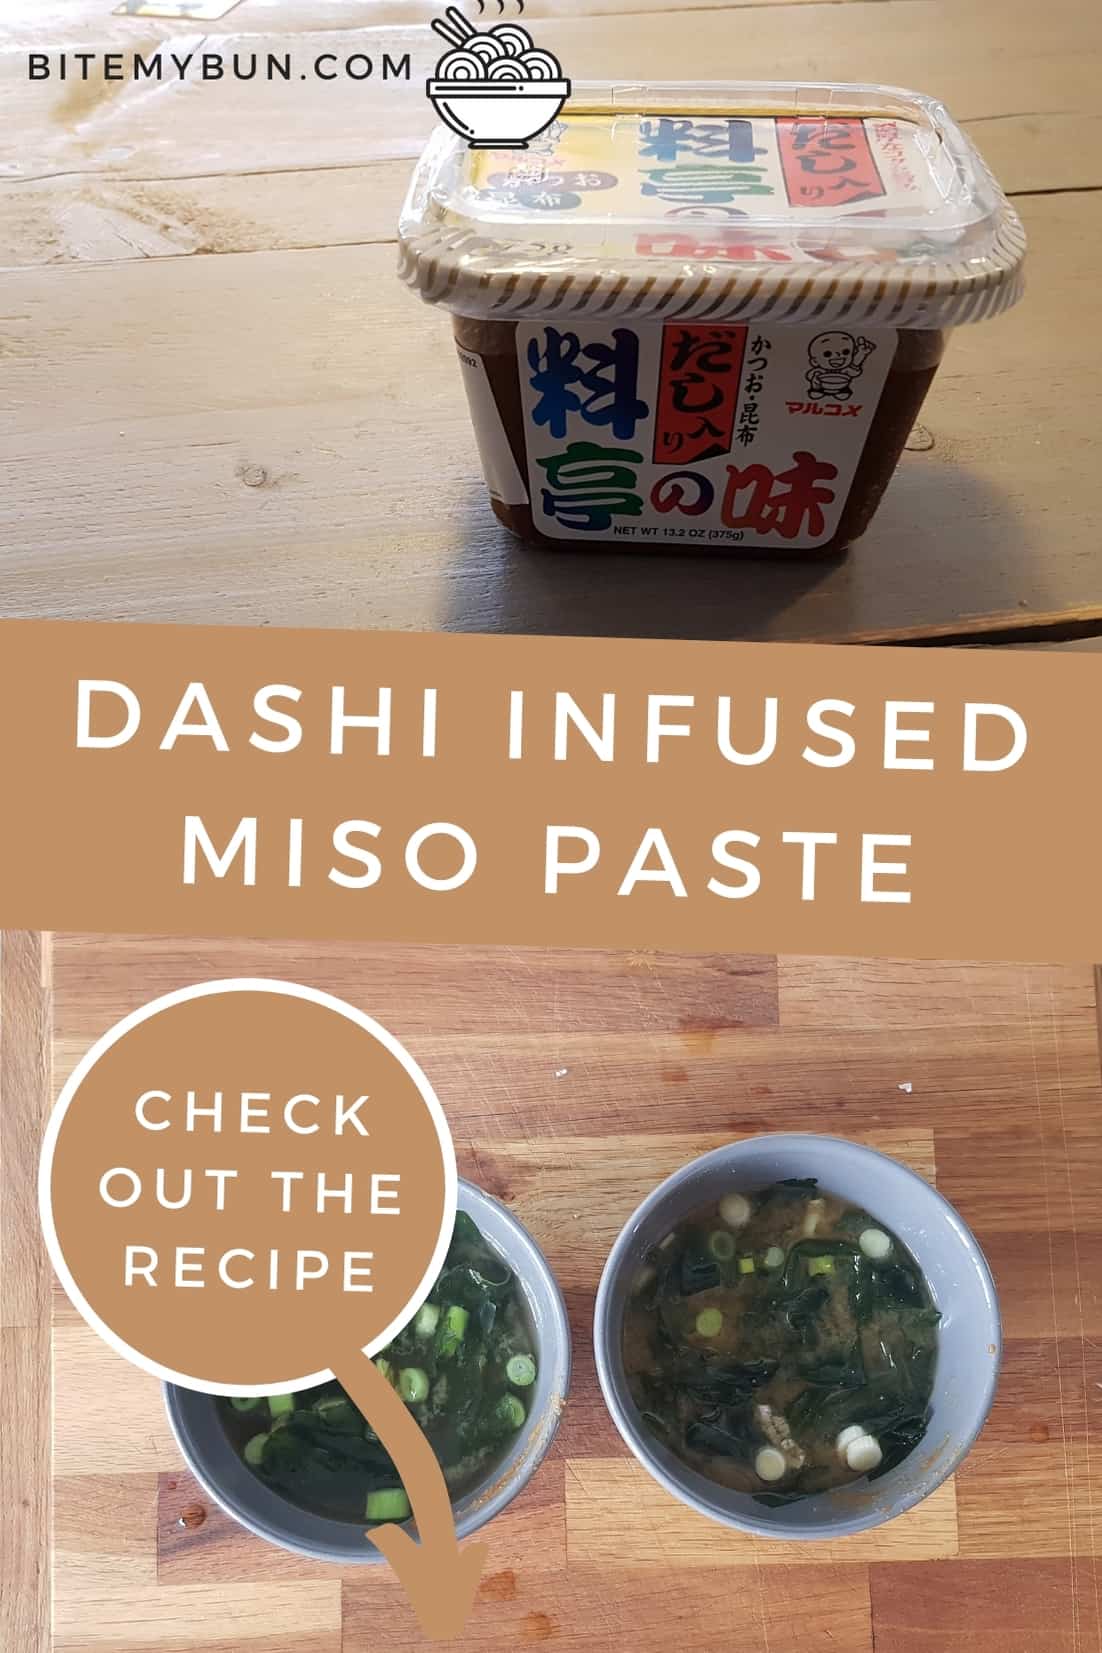 Receta de pasta de miso infundida con Dashi